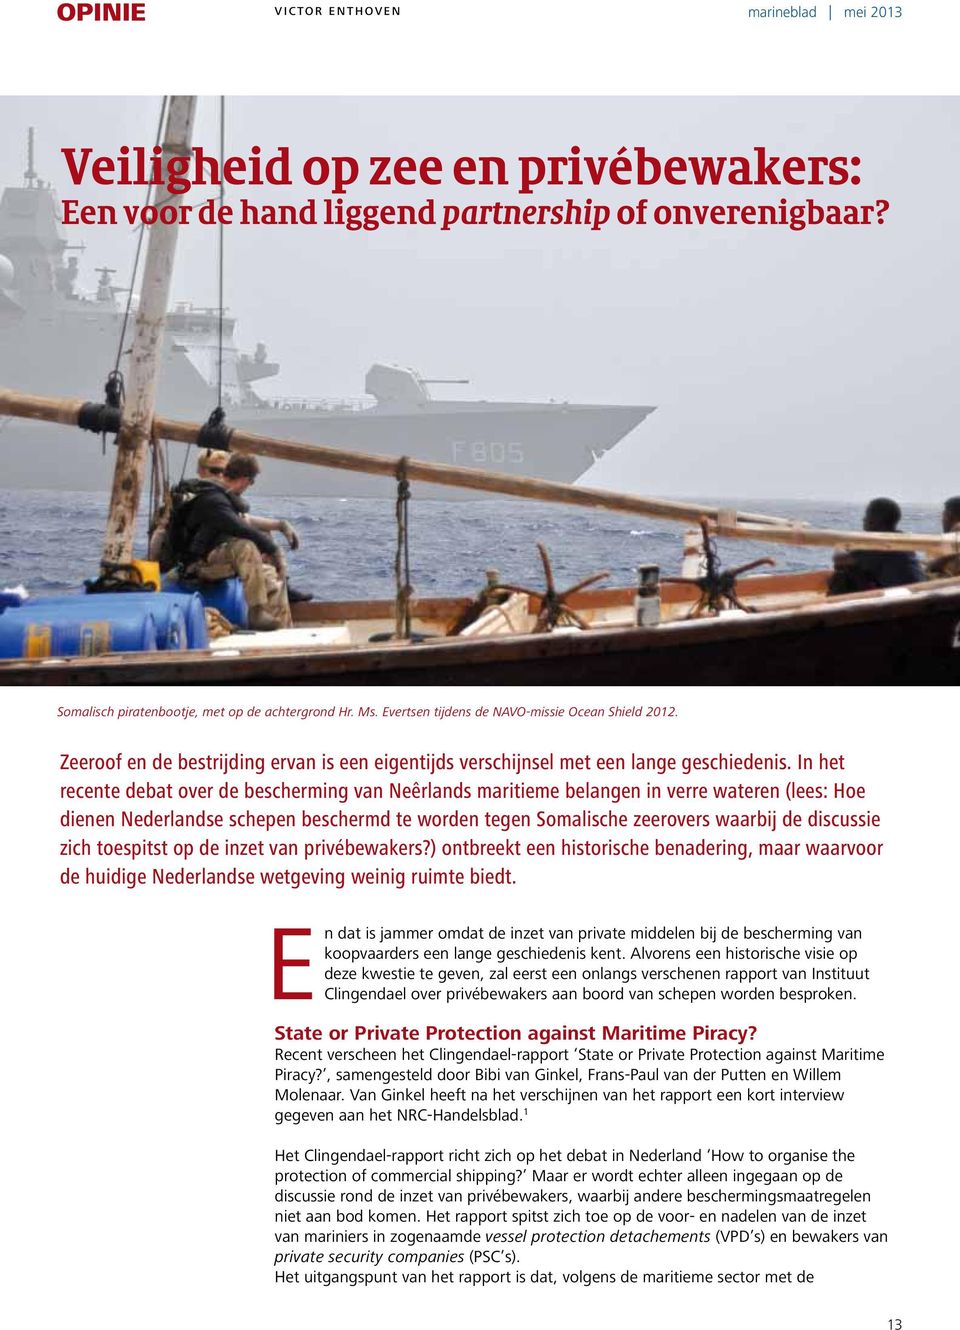 In het recente debat over de bescherming van Neêrlands maritieme belangen in verre wateren (lees: Hoe dienen Nederlandse schepen beschermd te worden tegen Somalische zeerovers waarbij de discussie